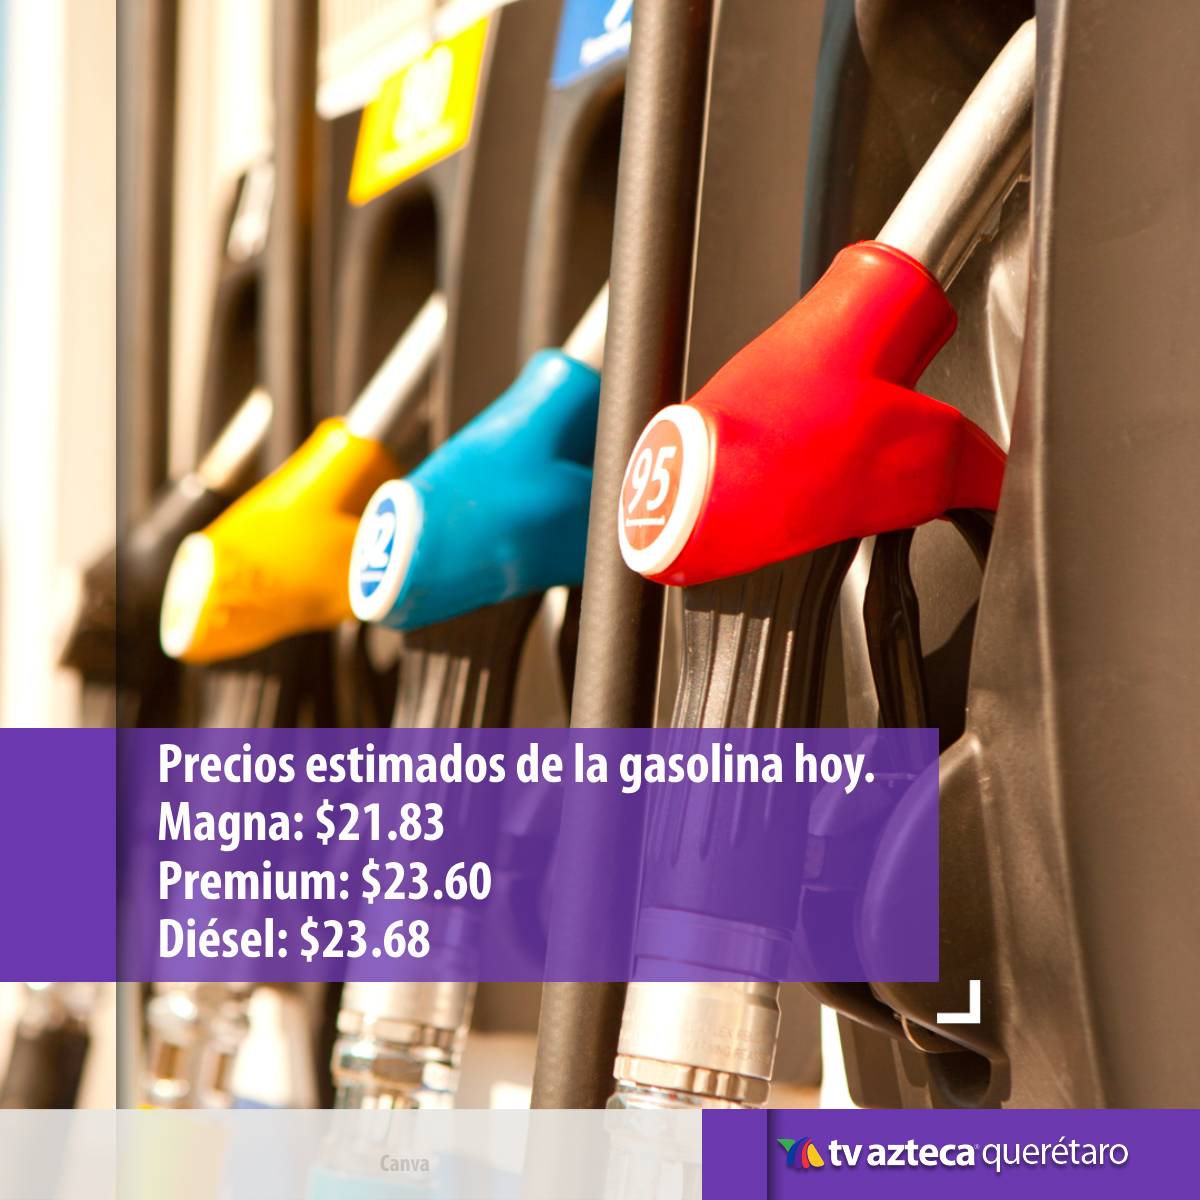 Te compartimos los precios estimados de la gasolina este 03 de Junio, conoce si es buena idea cargar combustible hoy. 👍⛽

#TvAztecaQuerétaro #PreciosEstimadosGasolina